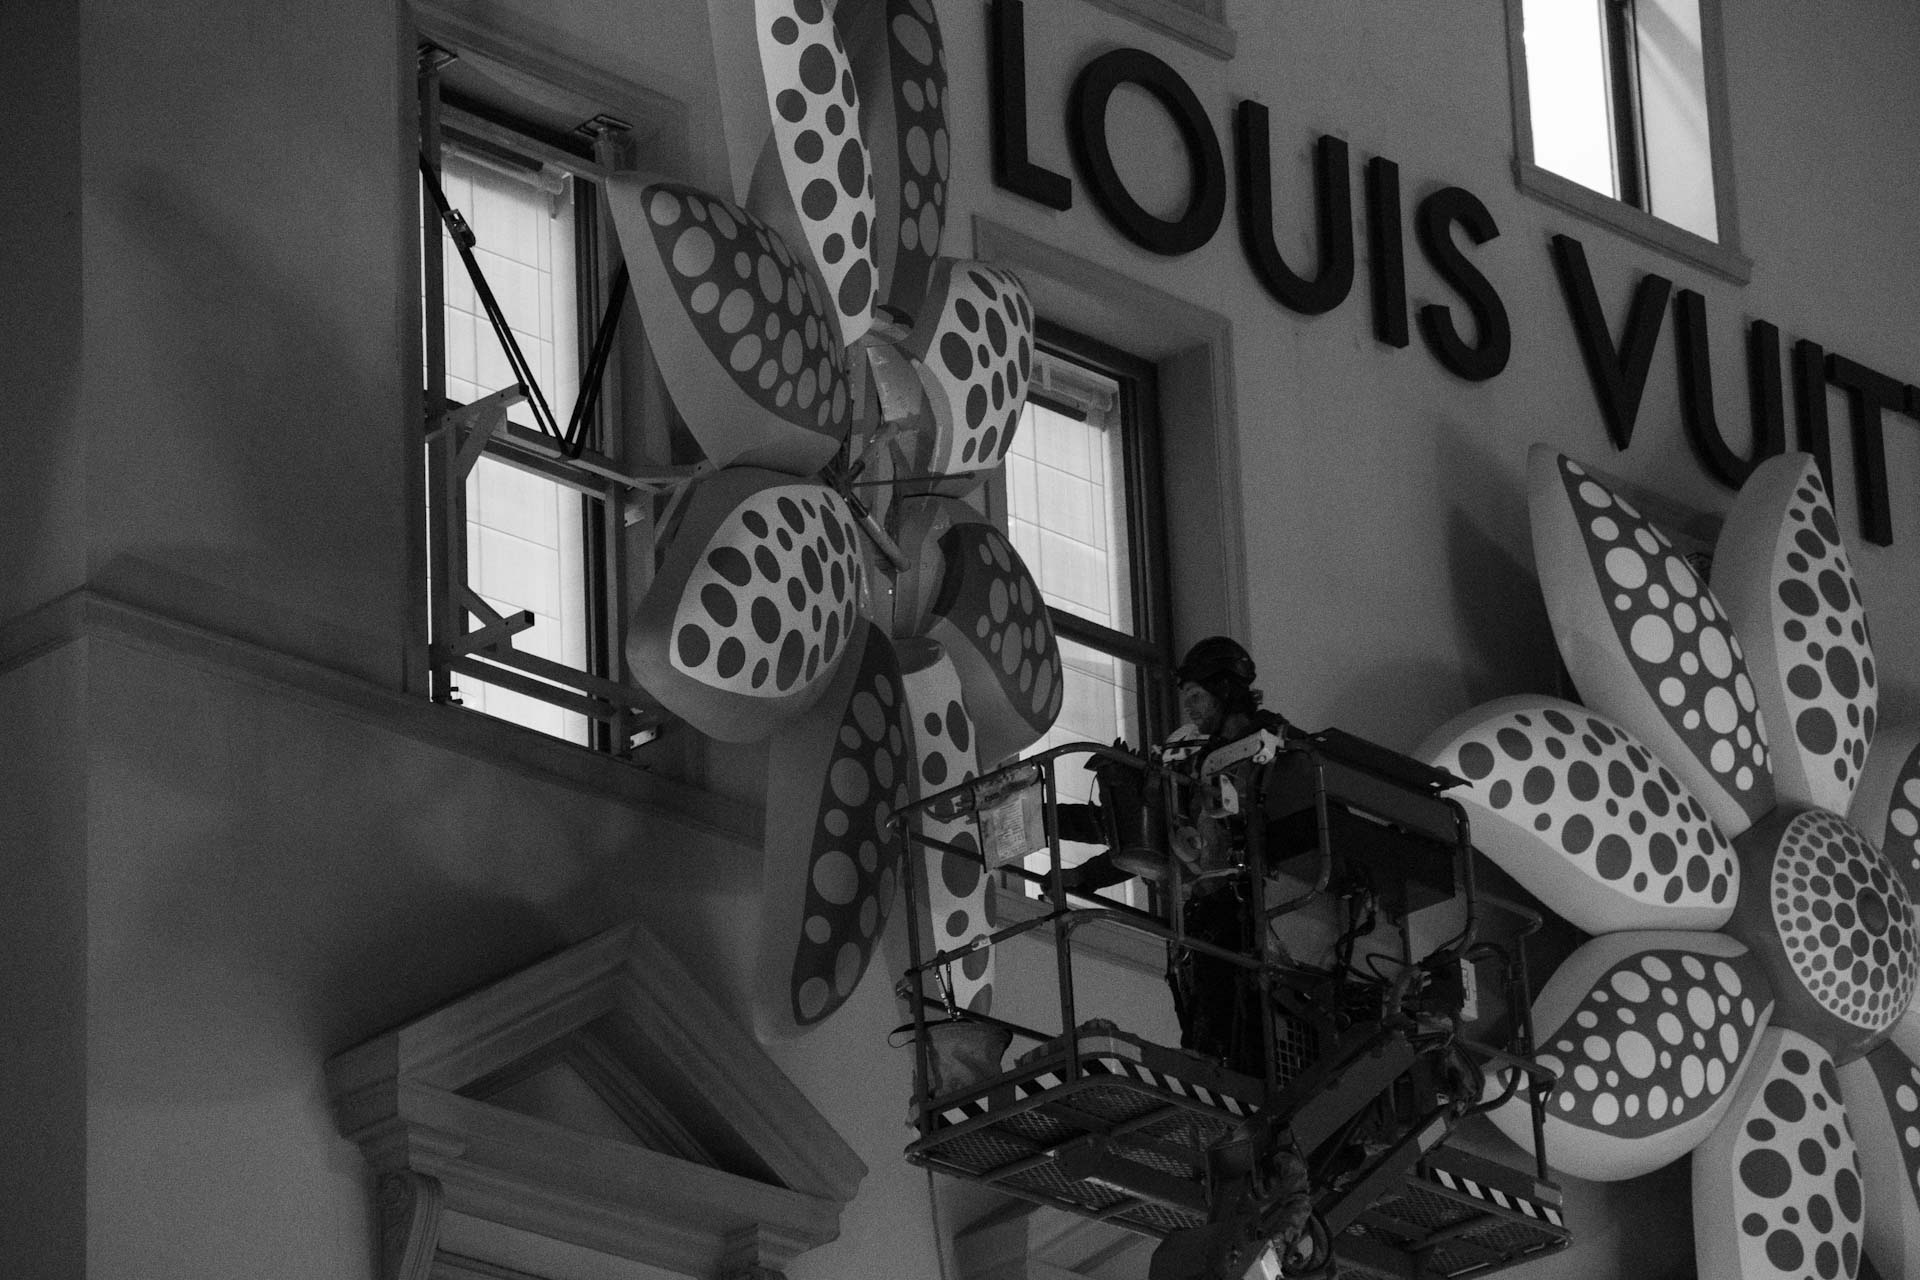 Louis Vuitton Wallpaper Install 